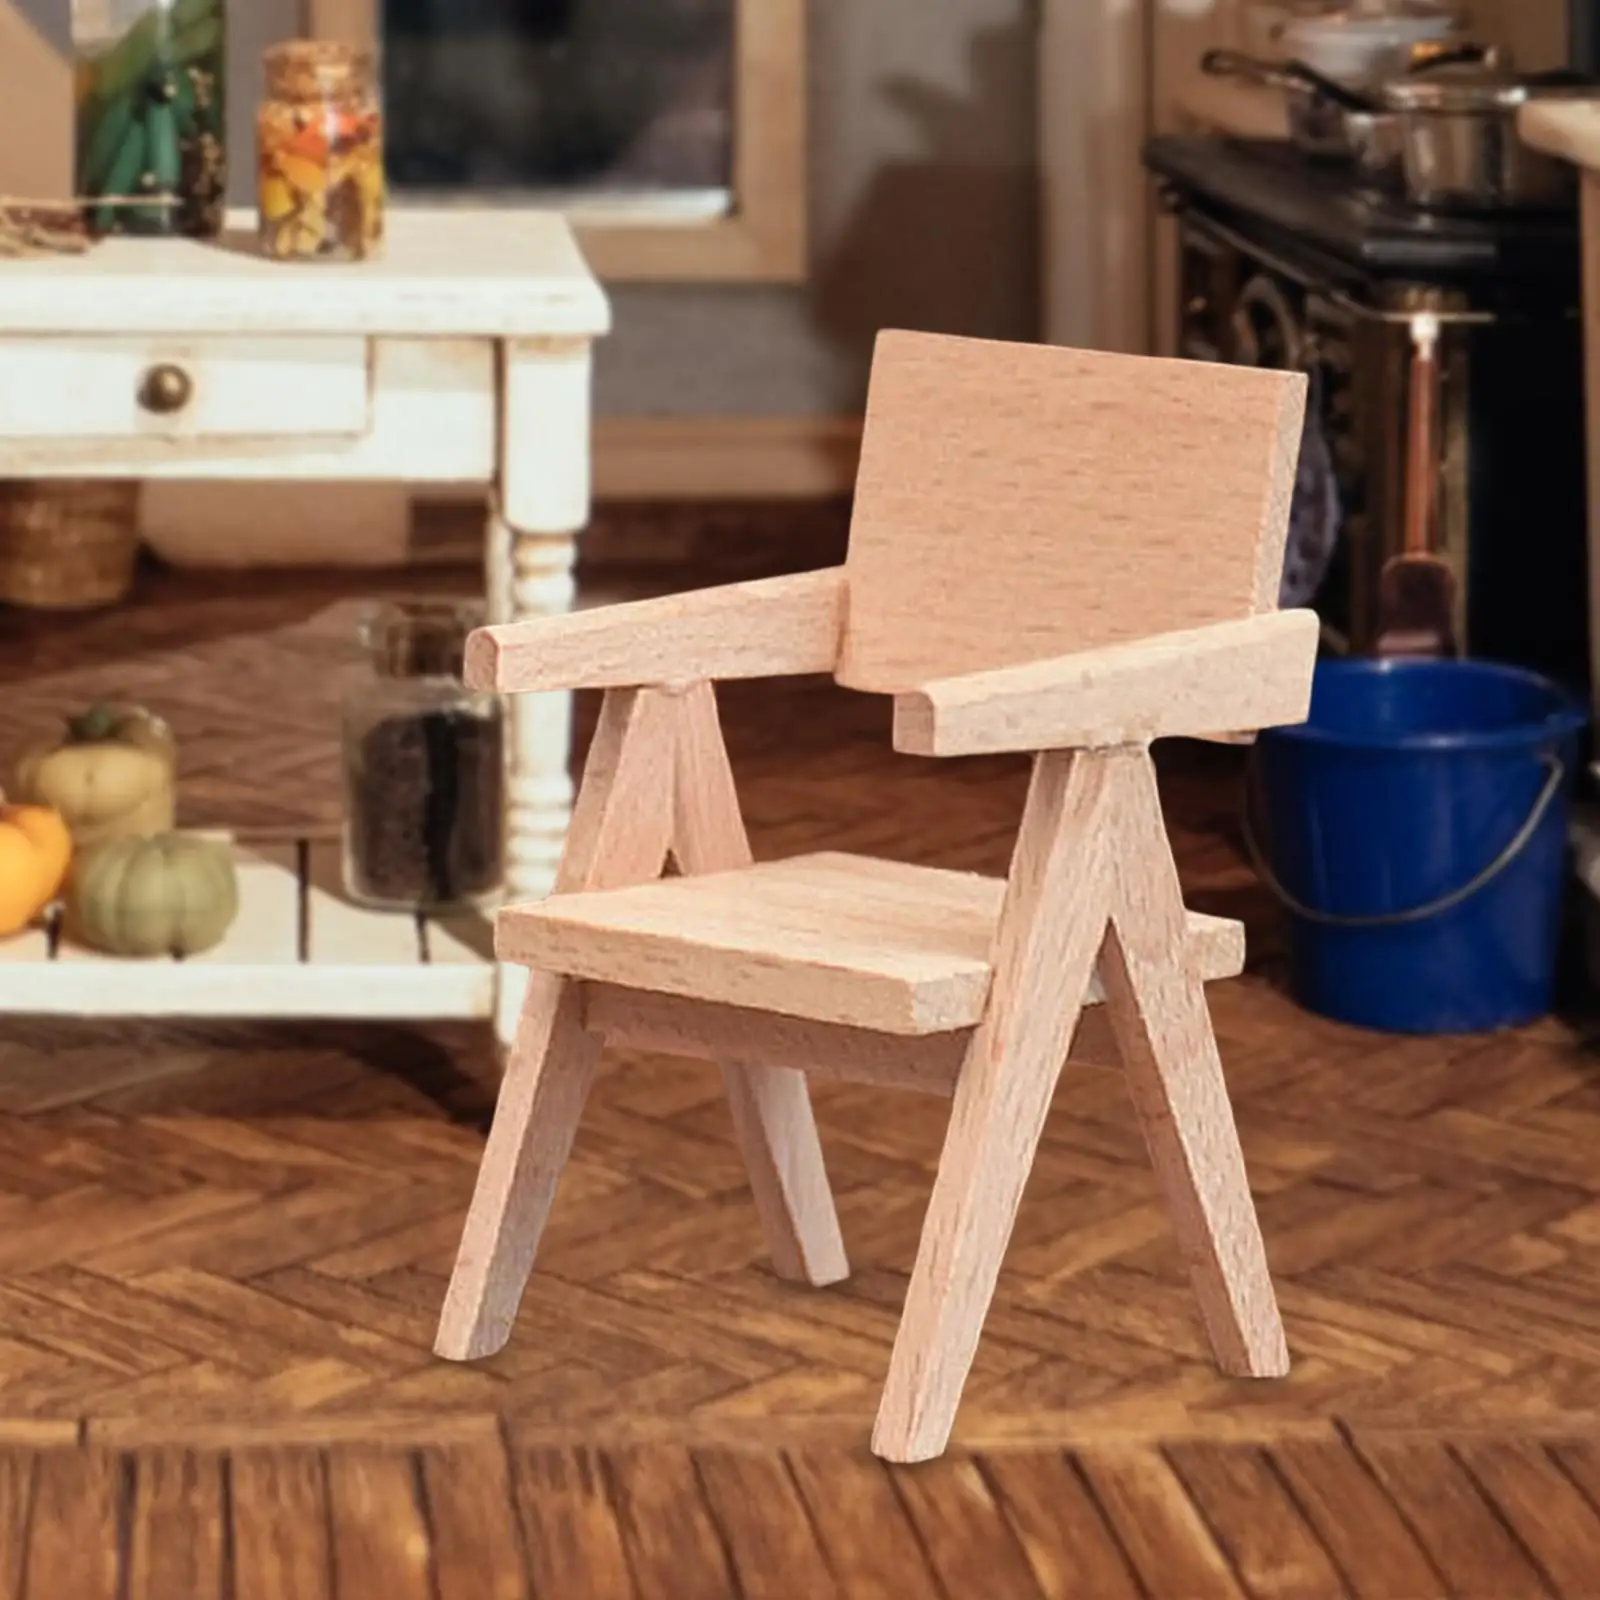 Mini Furniture Rustic Wooden Furniture for Micro Landscape Dollhouse Decor